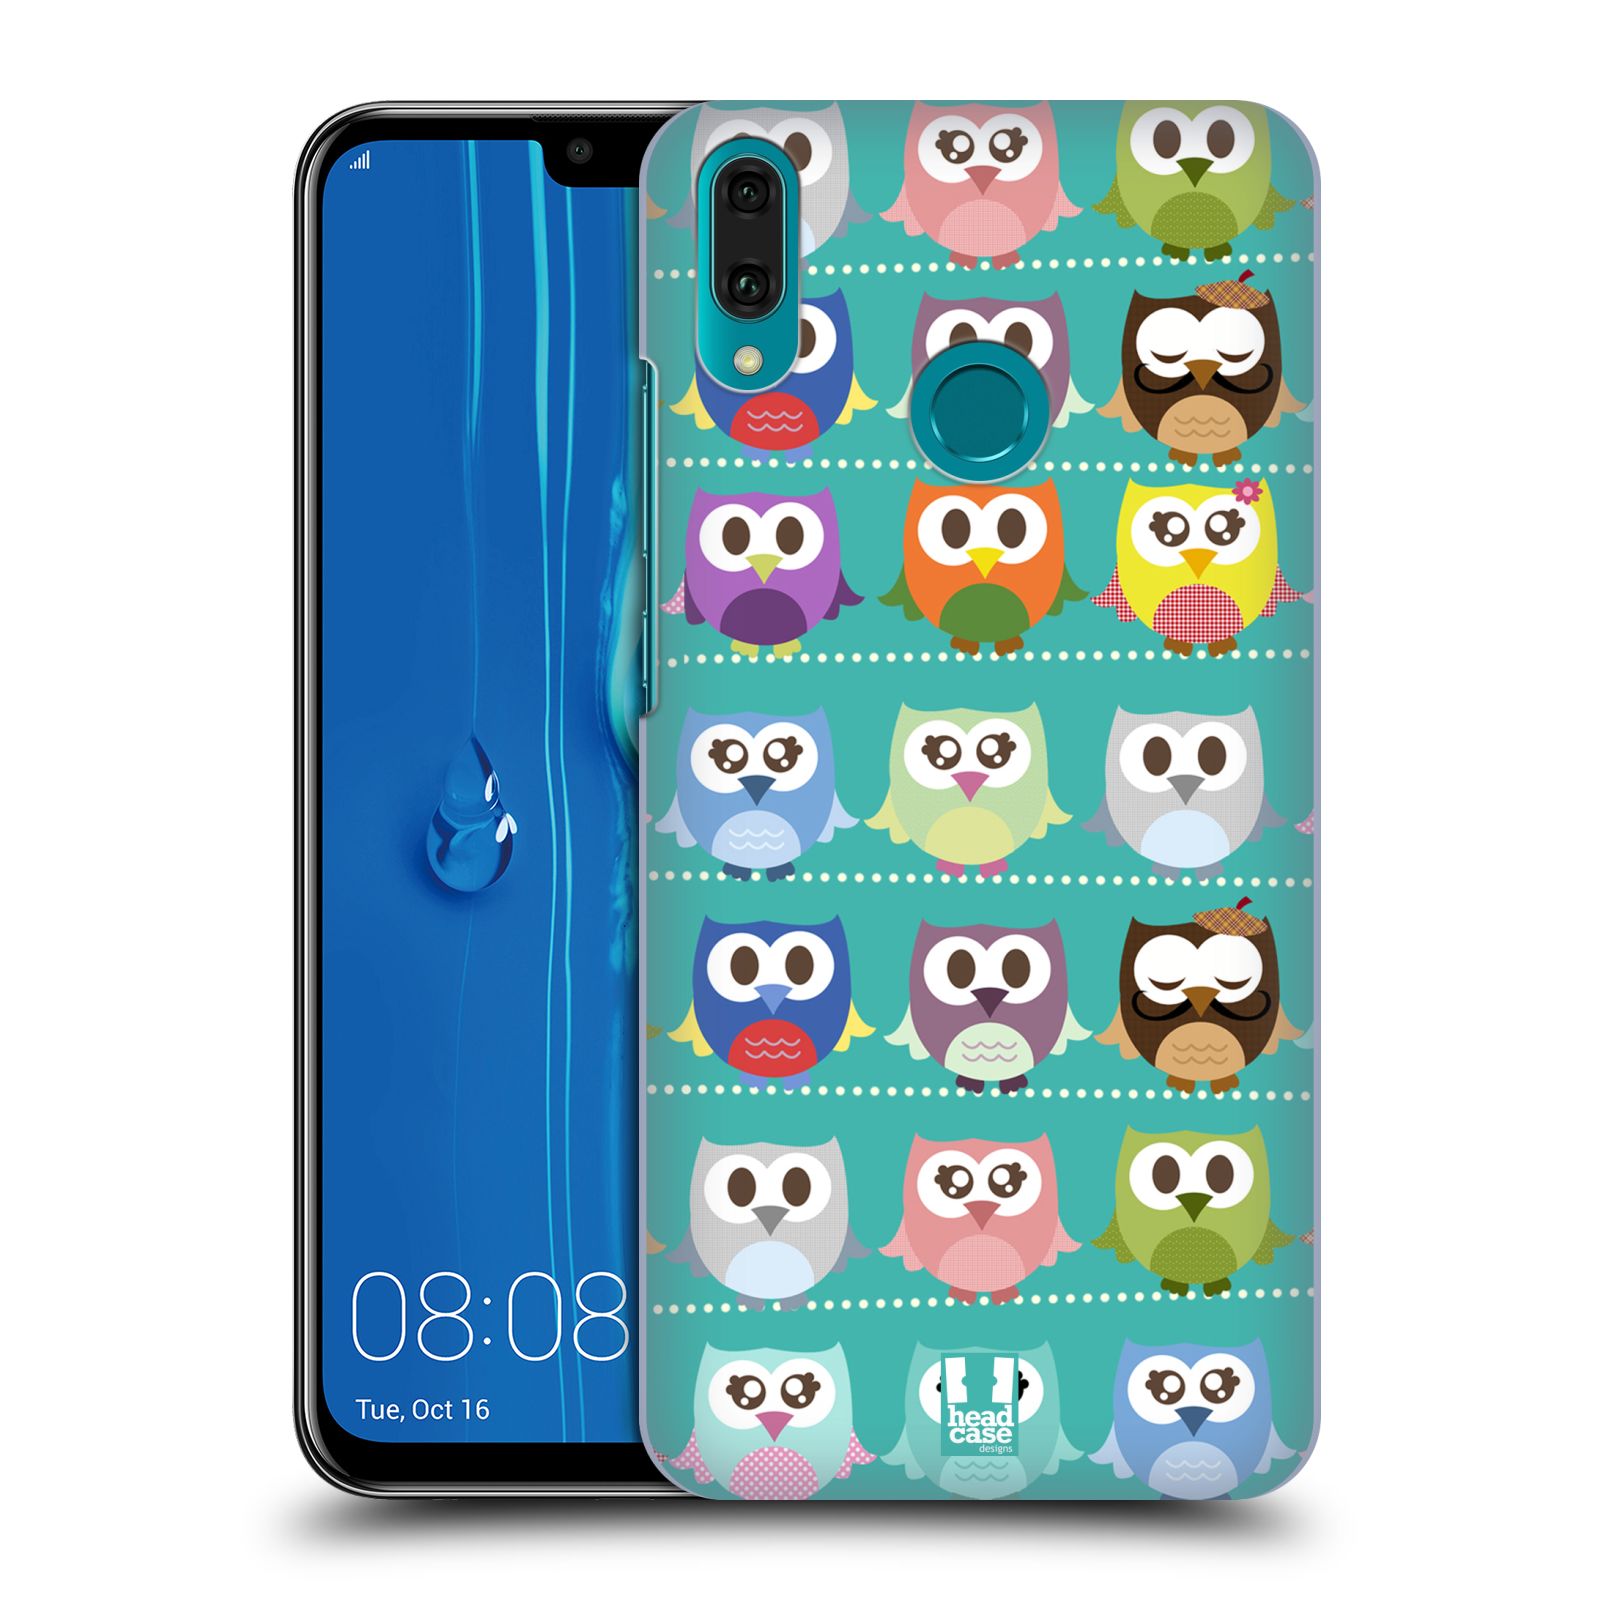 Pouzdro na mobil Huawei Y9 2019 - HEAD CASE - vzor Roztomilá sovička zelené sovičky